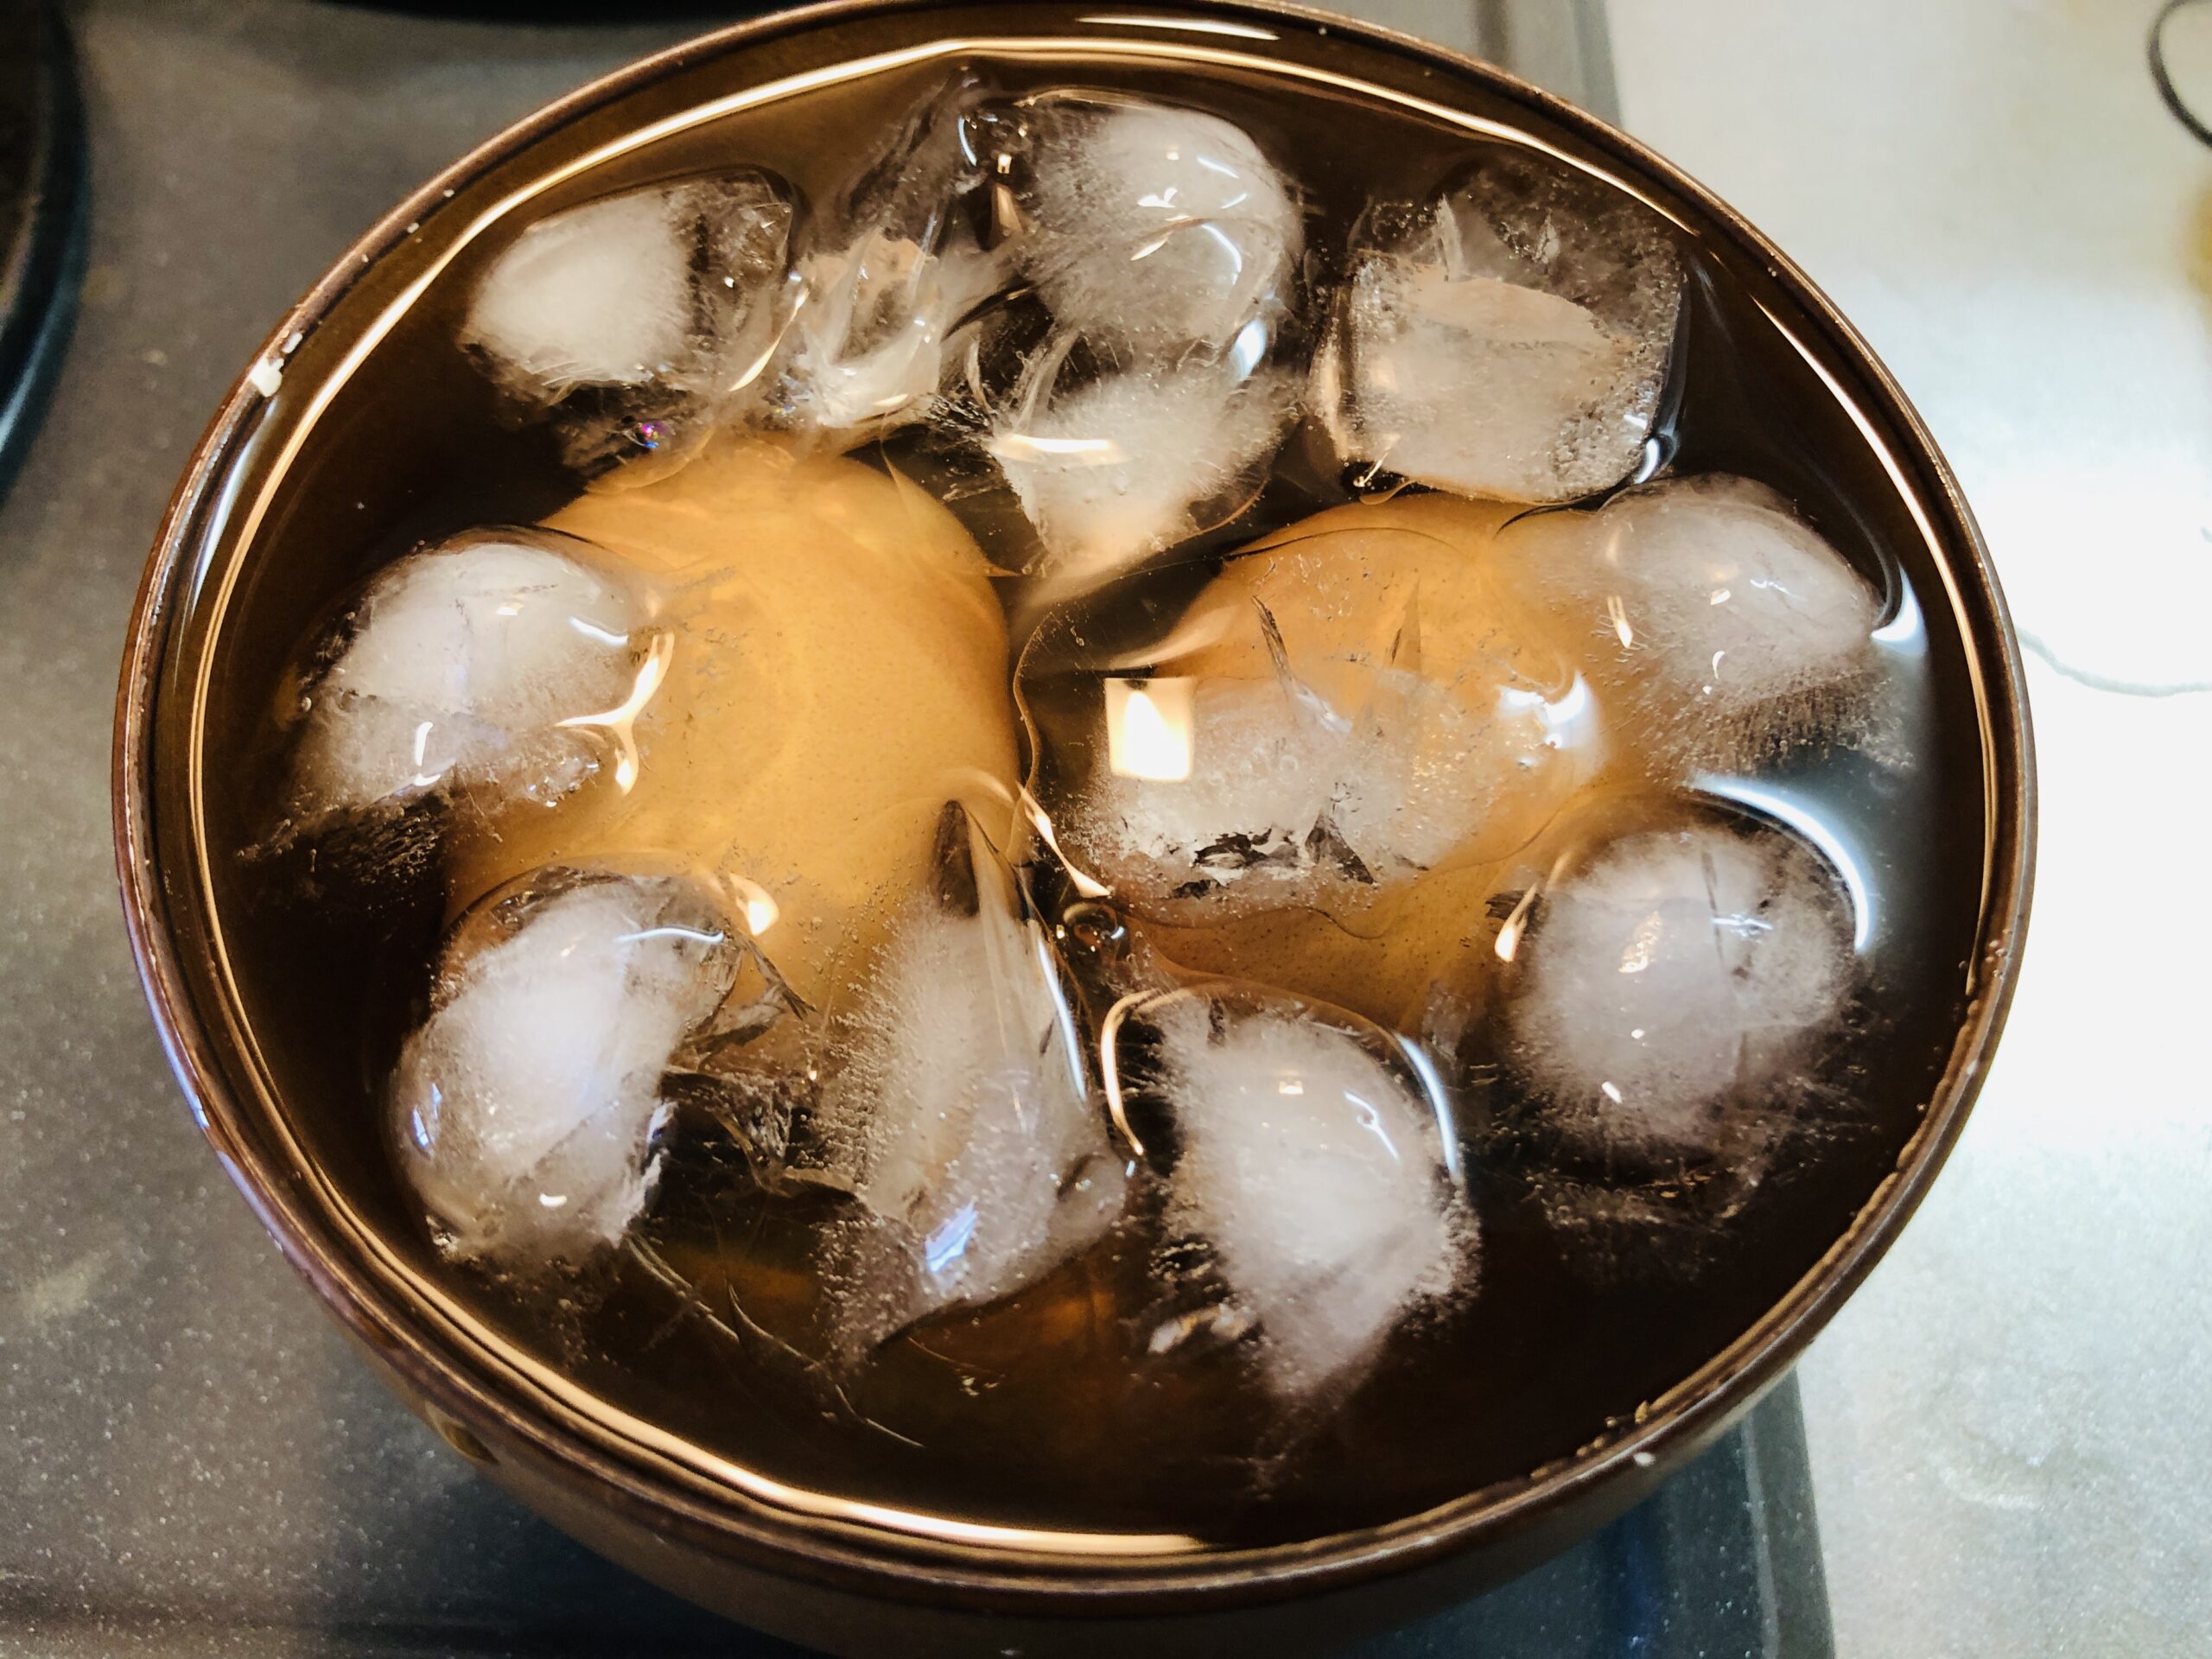 茹で上がった卵を氷水に落した状態の画像です